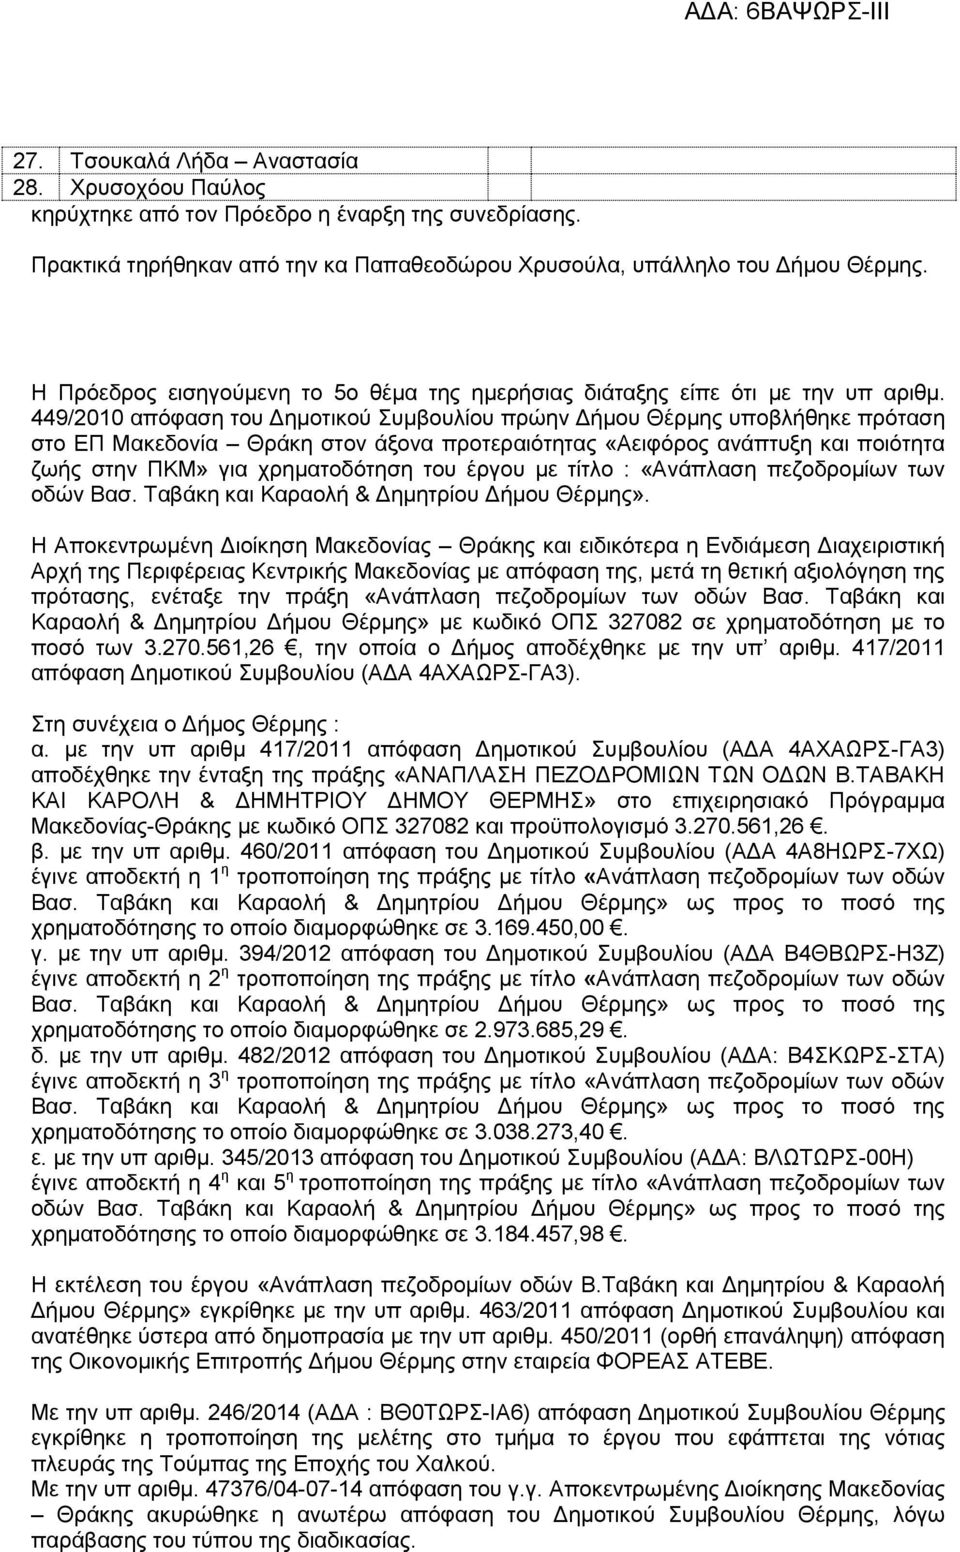 449/2010 απόφαση του Δημοτικού Συμβουλίου πρώην Δήμου Θέρμης υποβλήθηκε πρόταση στο ΕΠ Μακεδονία Θράκη στον άξονα προτεραιότητας «Αειφόρος ανάπτυξη και ποιότητα ζωής στην ΠΚΜ» για χρηματοδότηση του